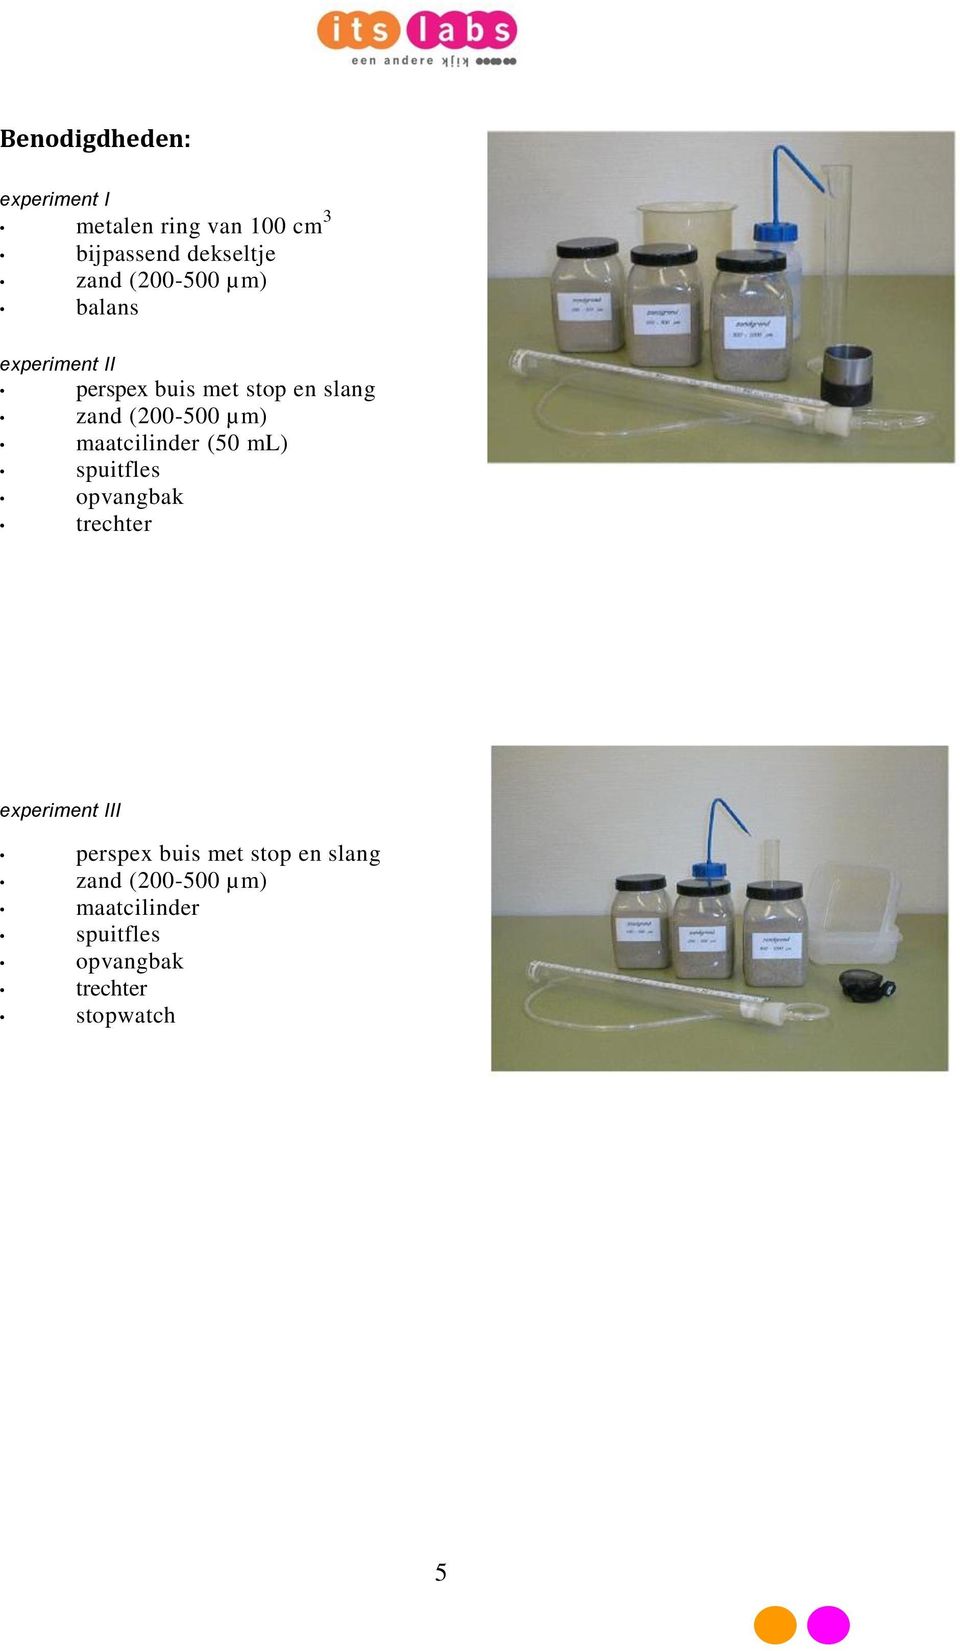 maatcilinder (50 ml) spuitfles opvangbak trechter experiment III perspex buis met